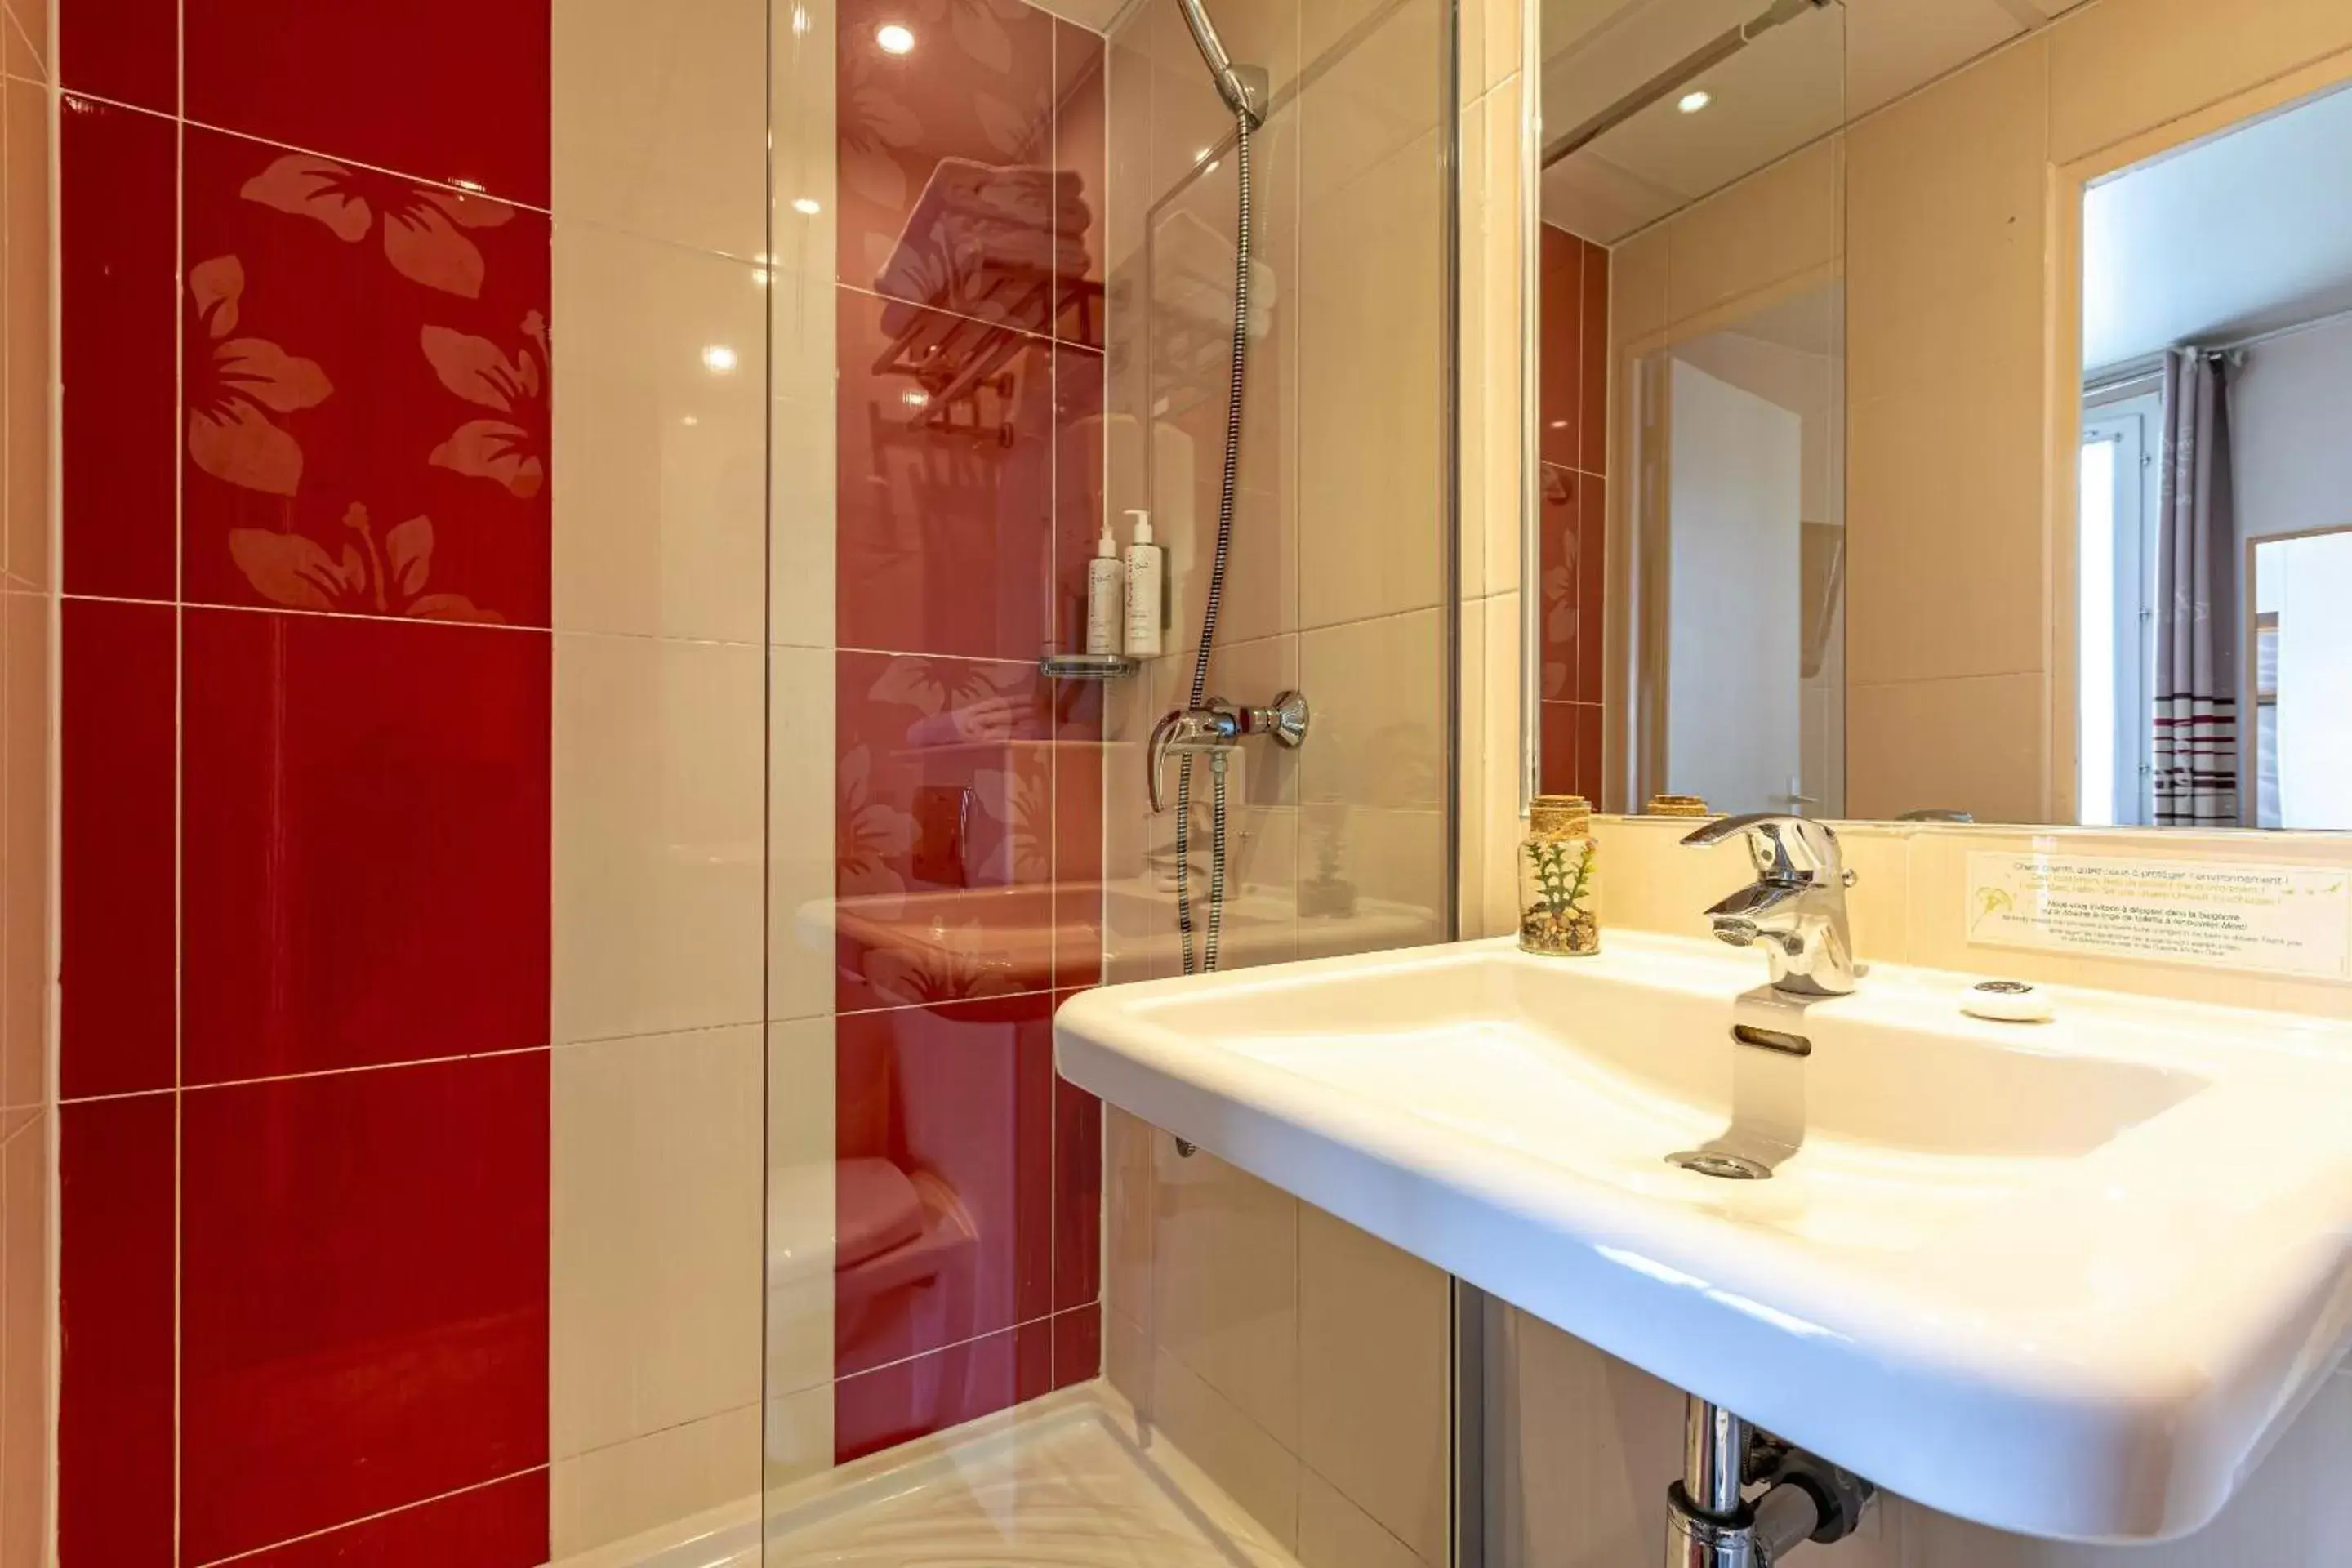 Shower, Bathroom in Hotel Ariane Montparnasse by Patrick Hayat